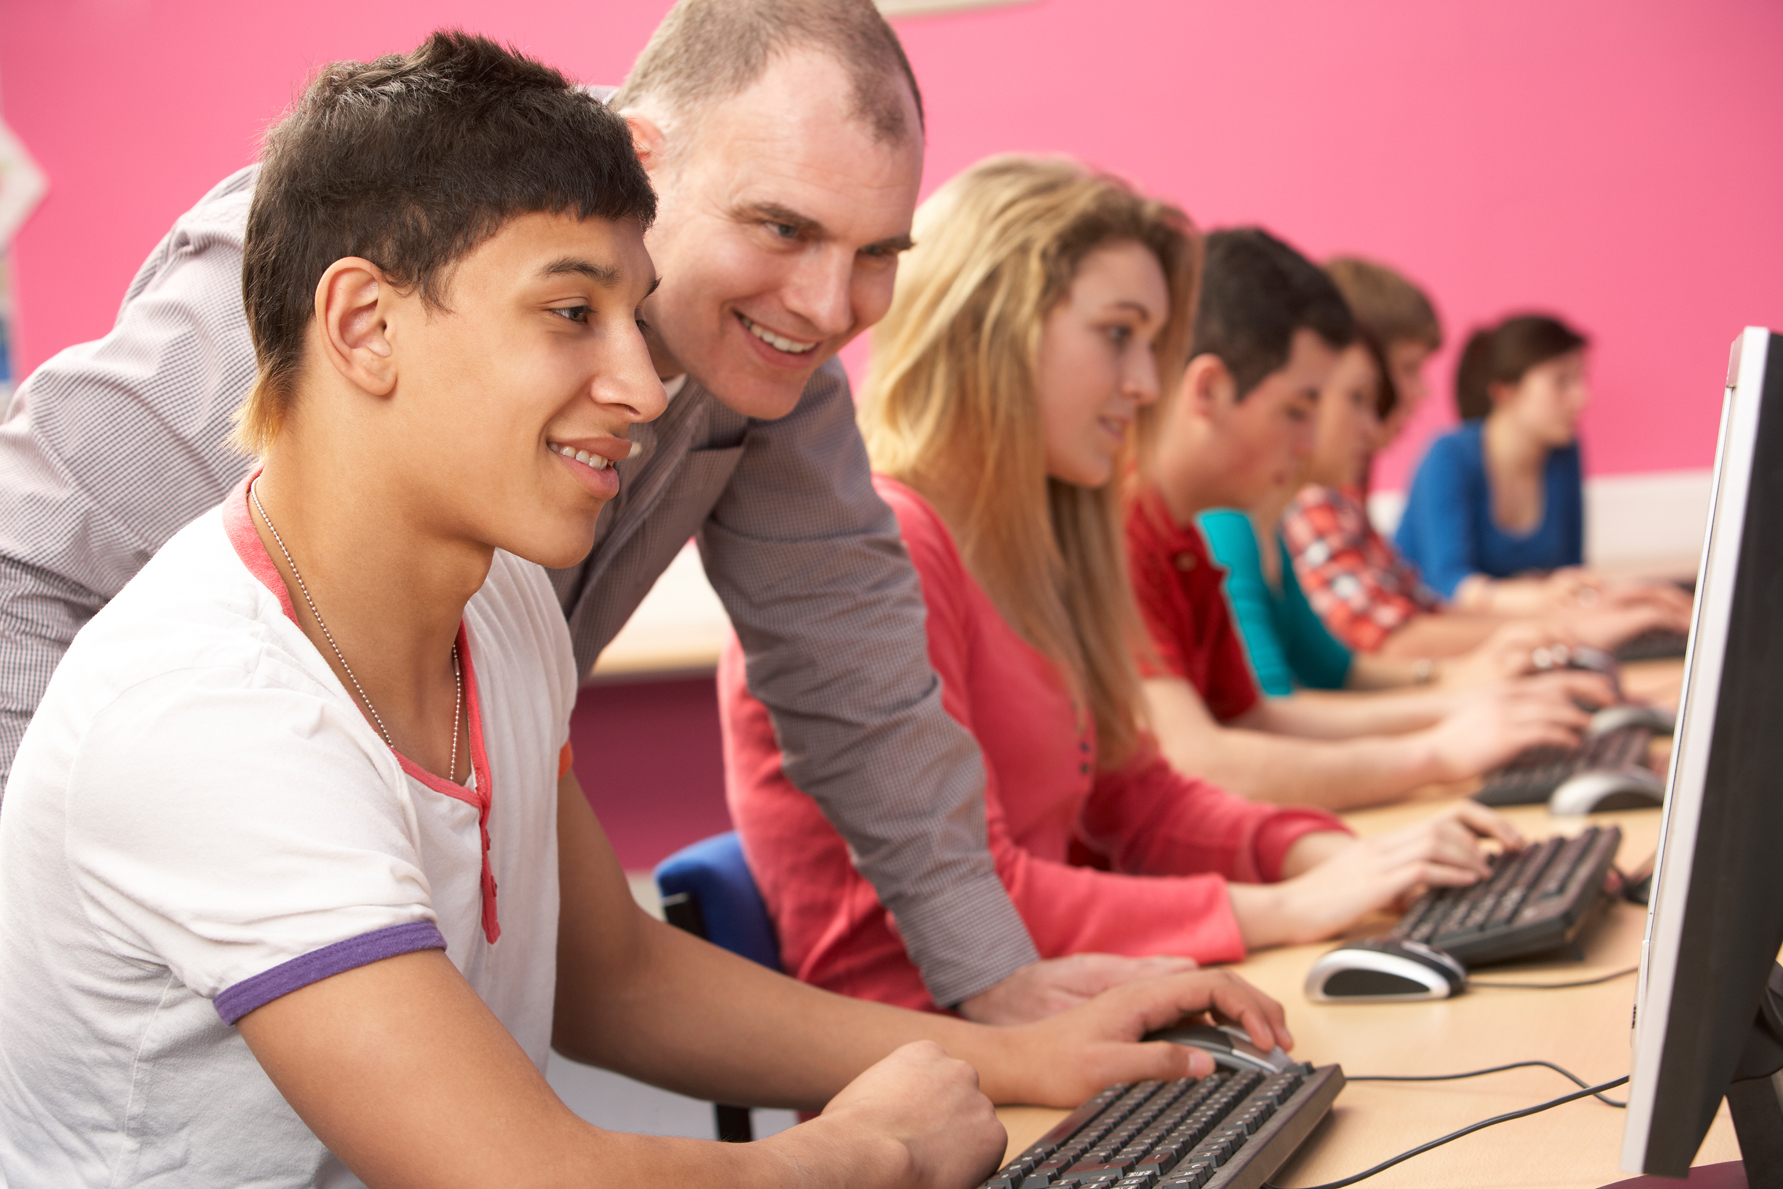 Подходящий работа для подростков. Студент с компьютером. Фото студента с компьютером. Студенты с компьютерами маками. Работа подростку Сток фото.